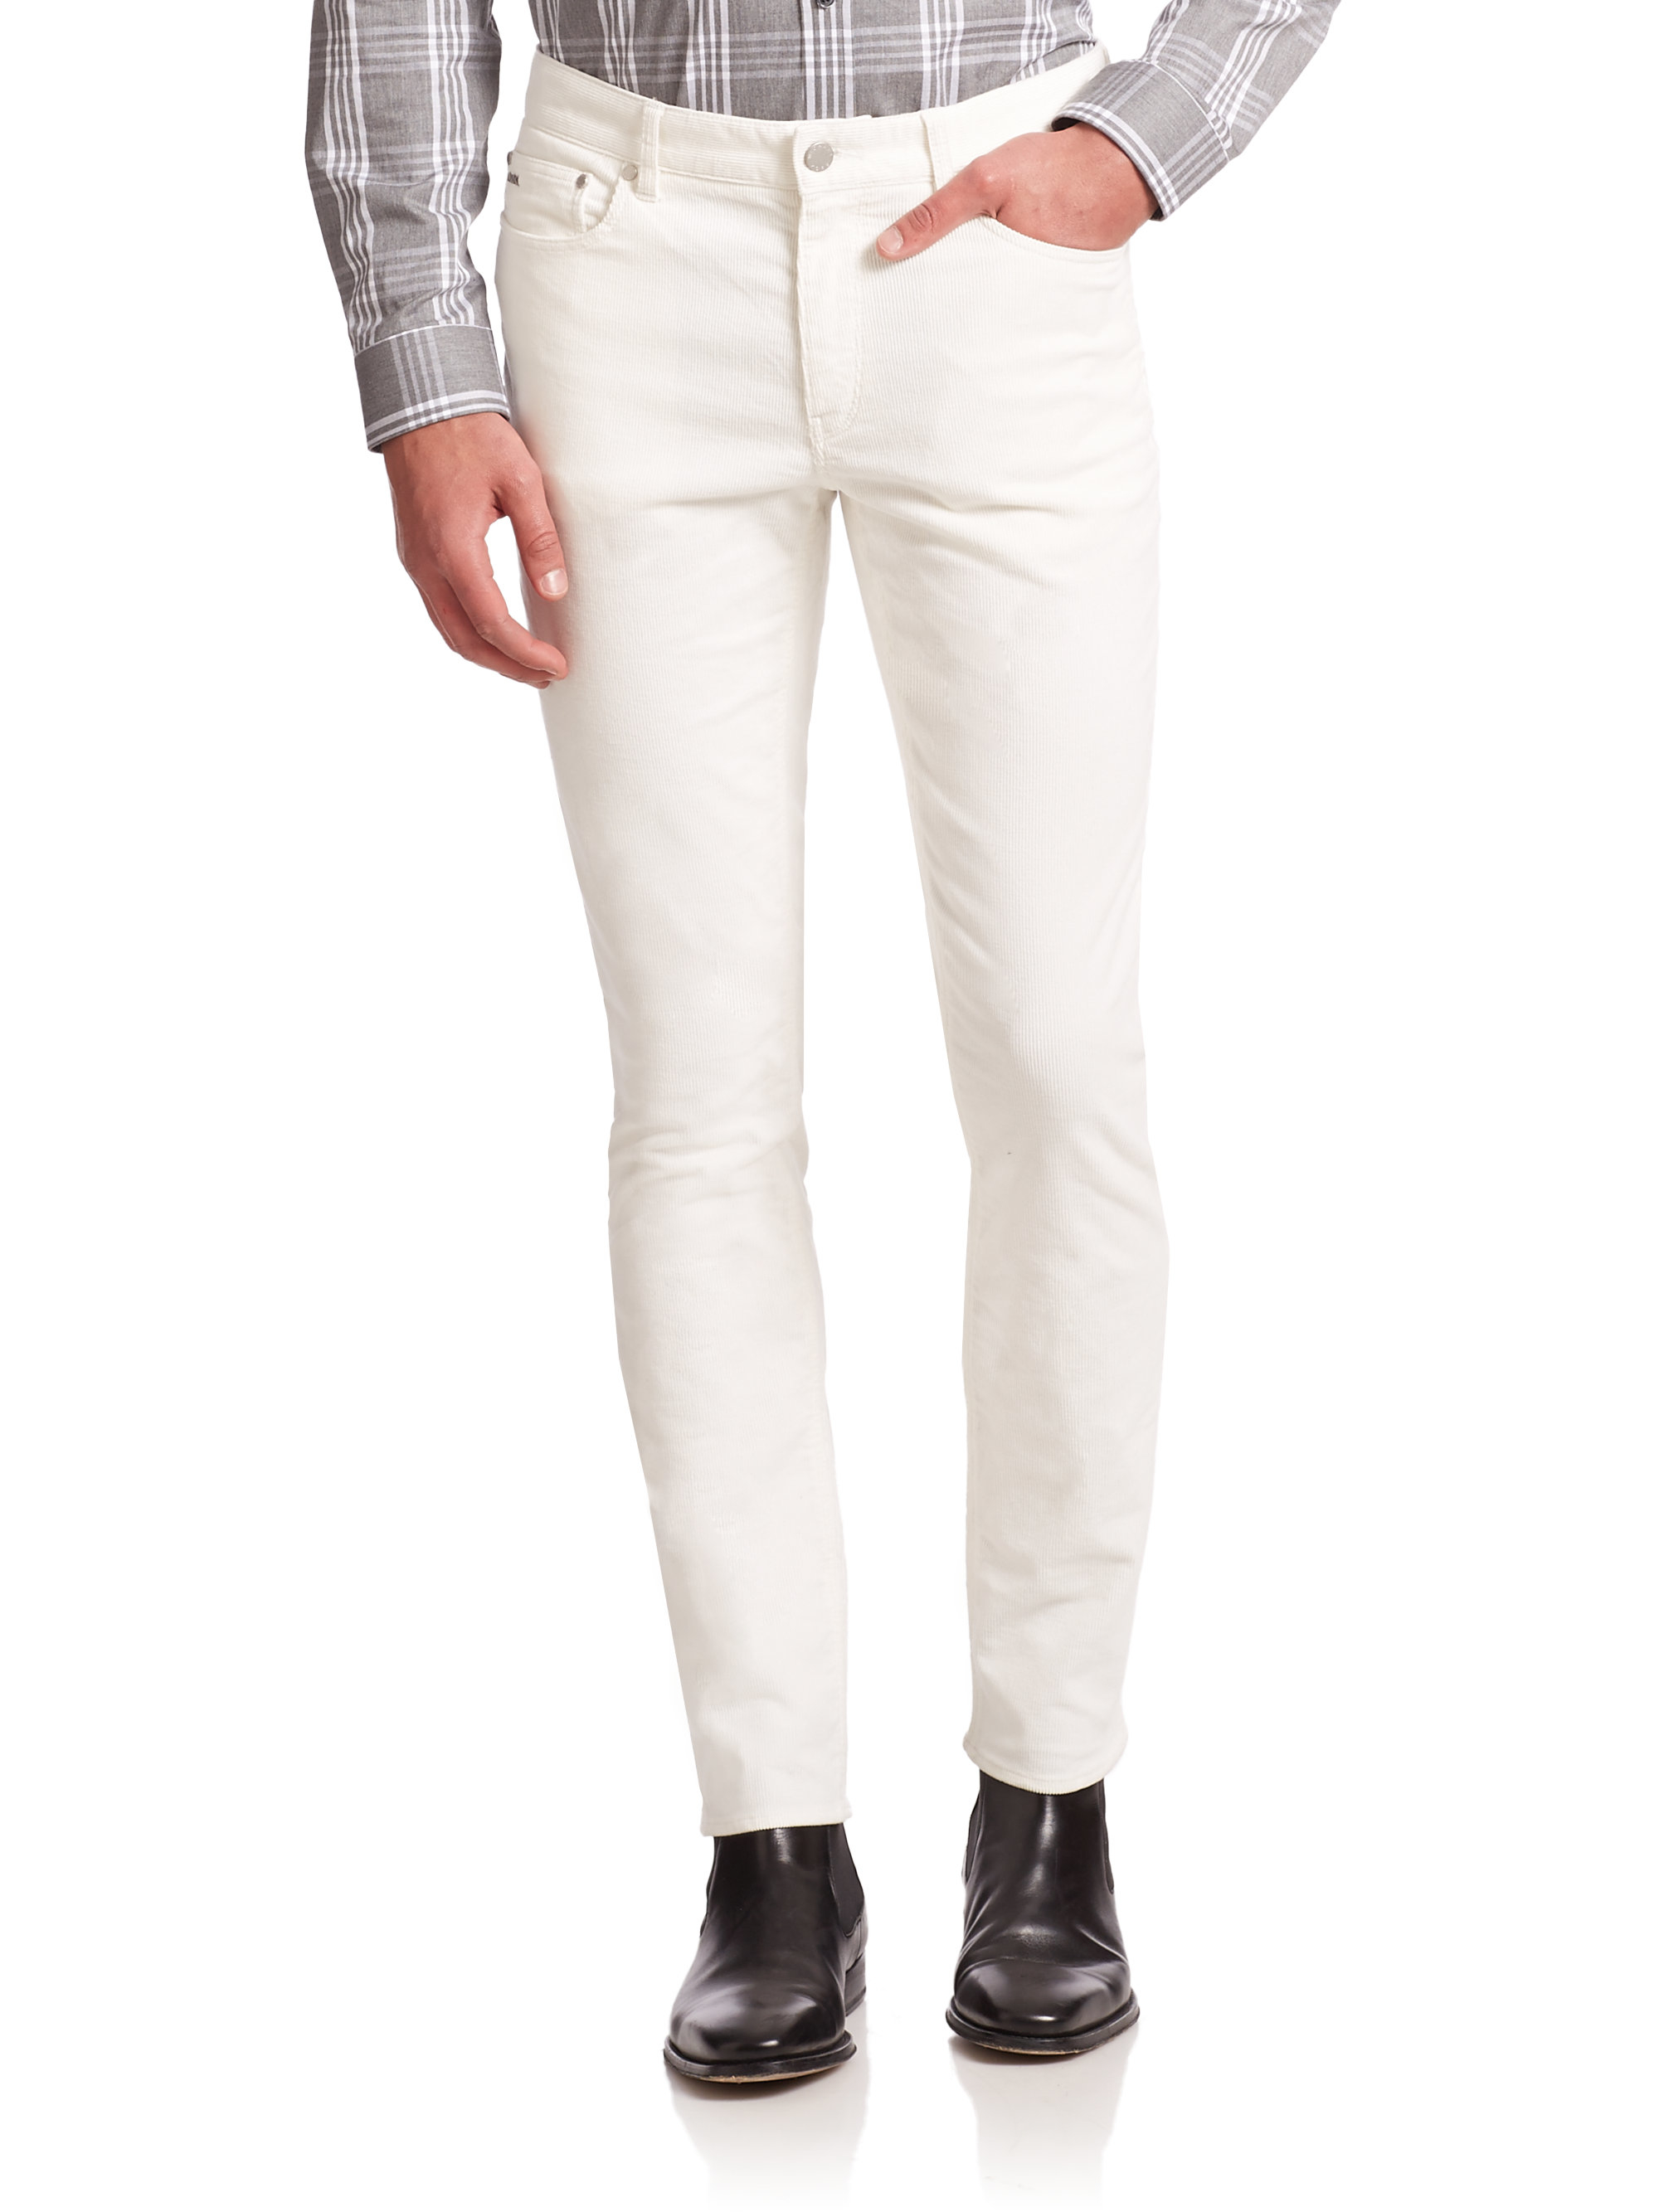 Michael Kors Slim-fit Corduroy Pants in Cream (Natural) for Men - Lyst